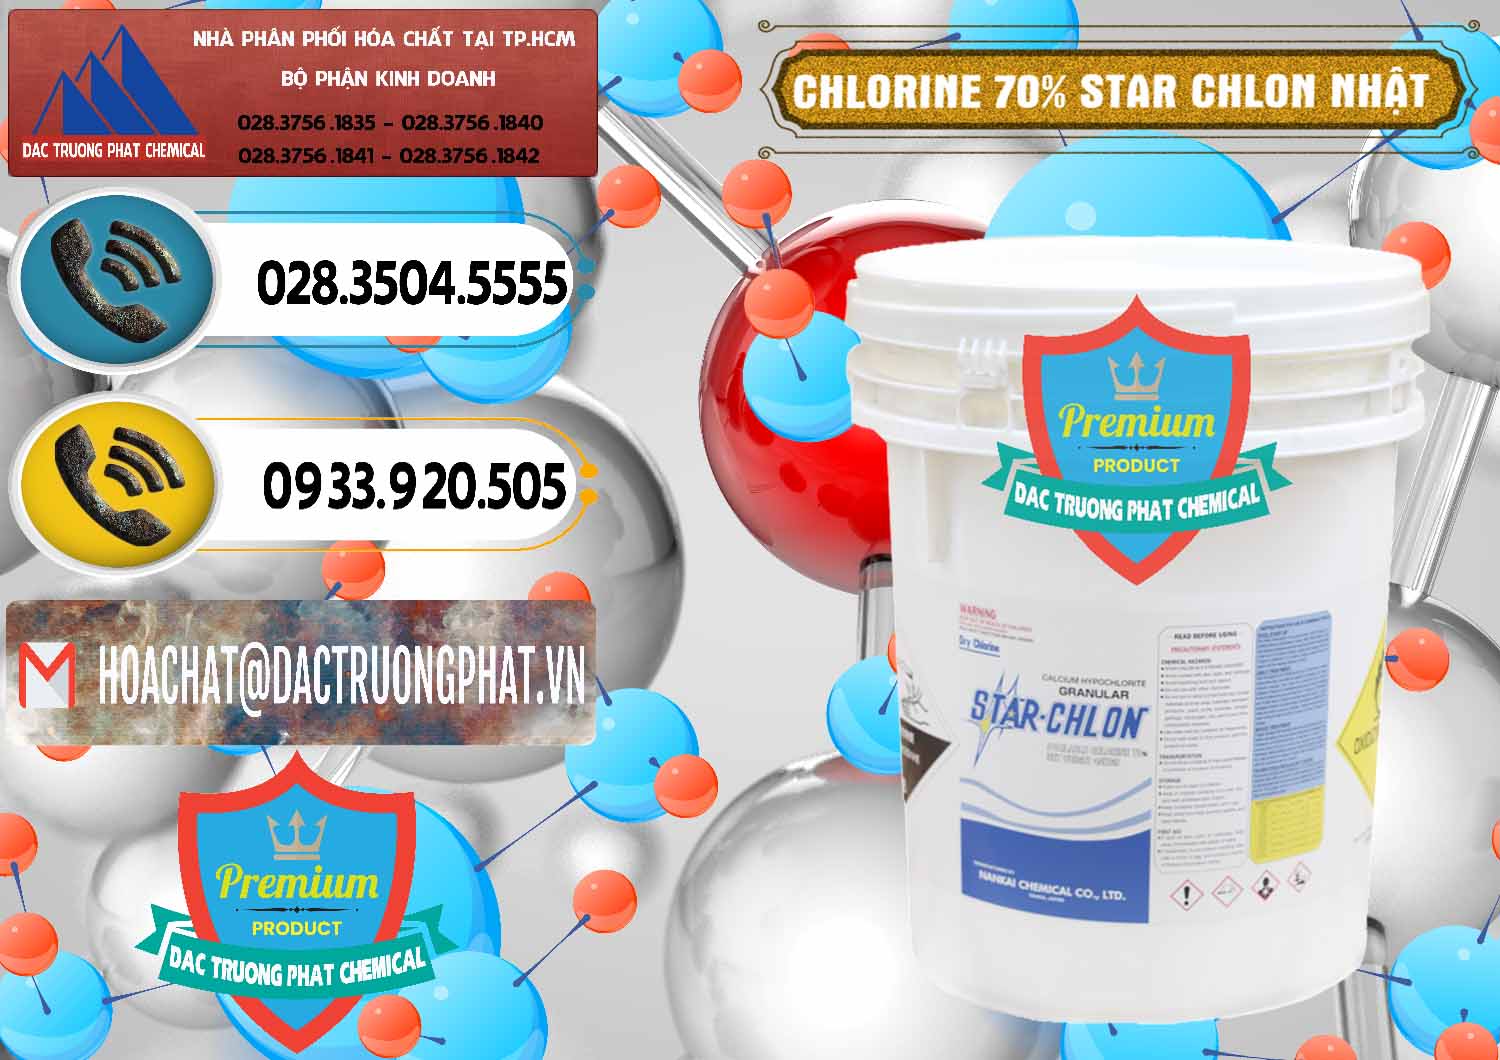 Cty chuyên bán ( phân phối ) Clorin – Chlorine 70% Star Chlon Nhật Bản Japan - 0243 - Nhà phân phối & cung cấp hóa chất tại TP.HCM - hoachatdetnhuom.vn